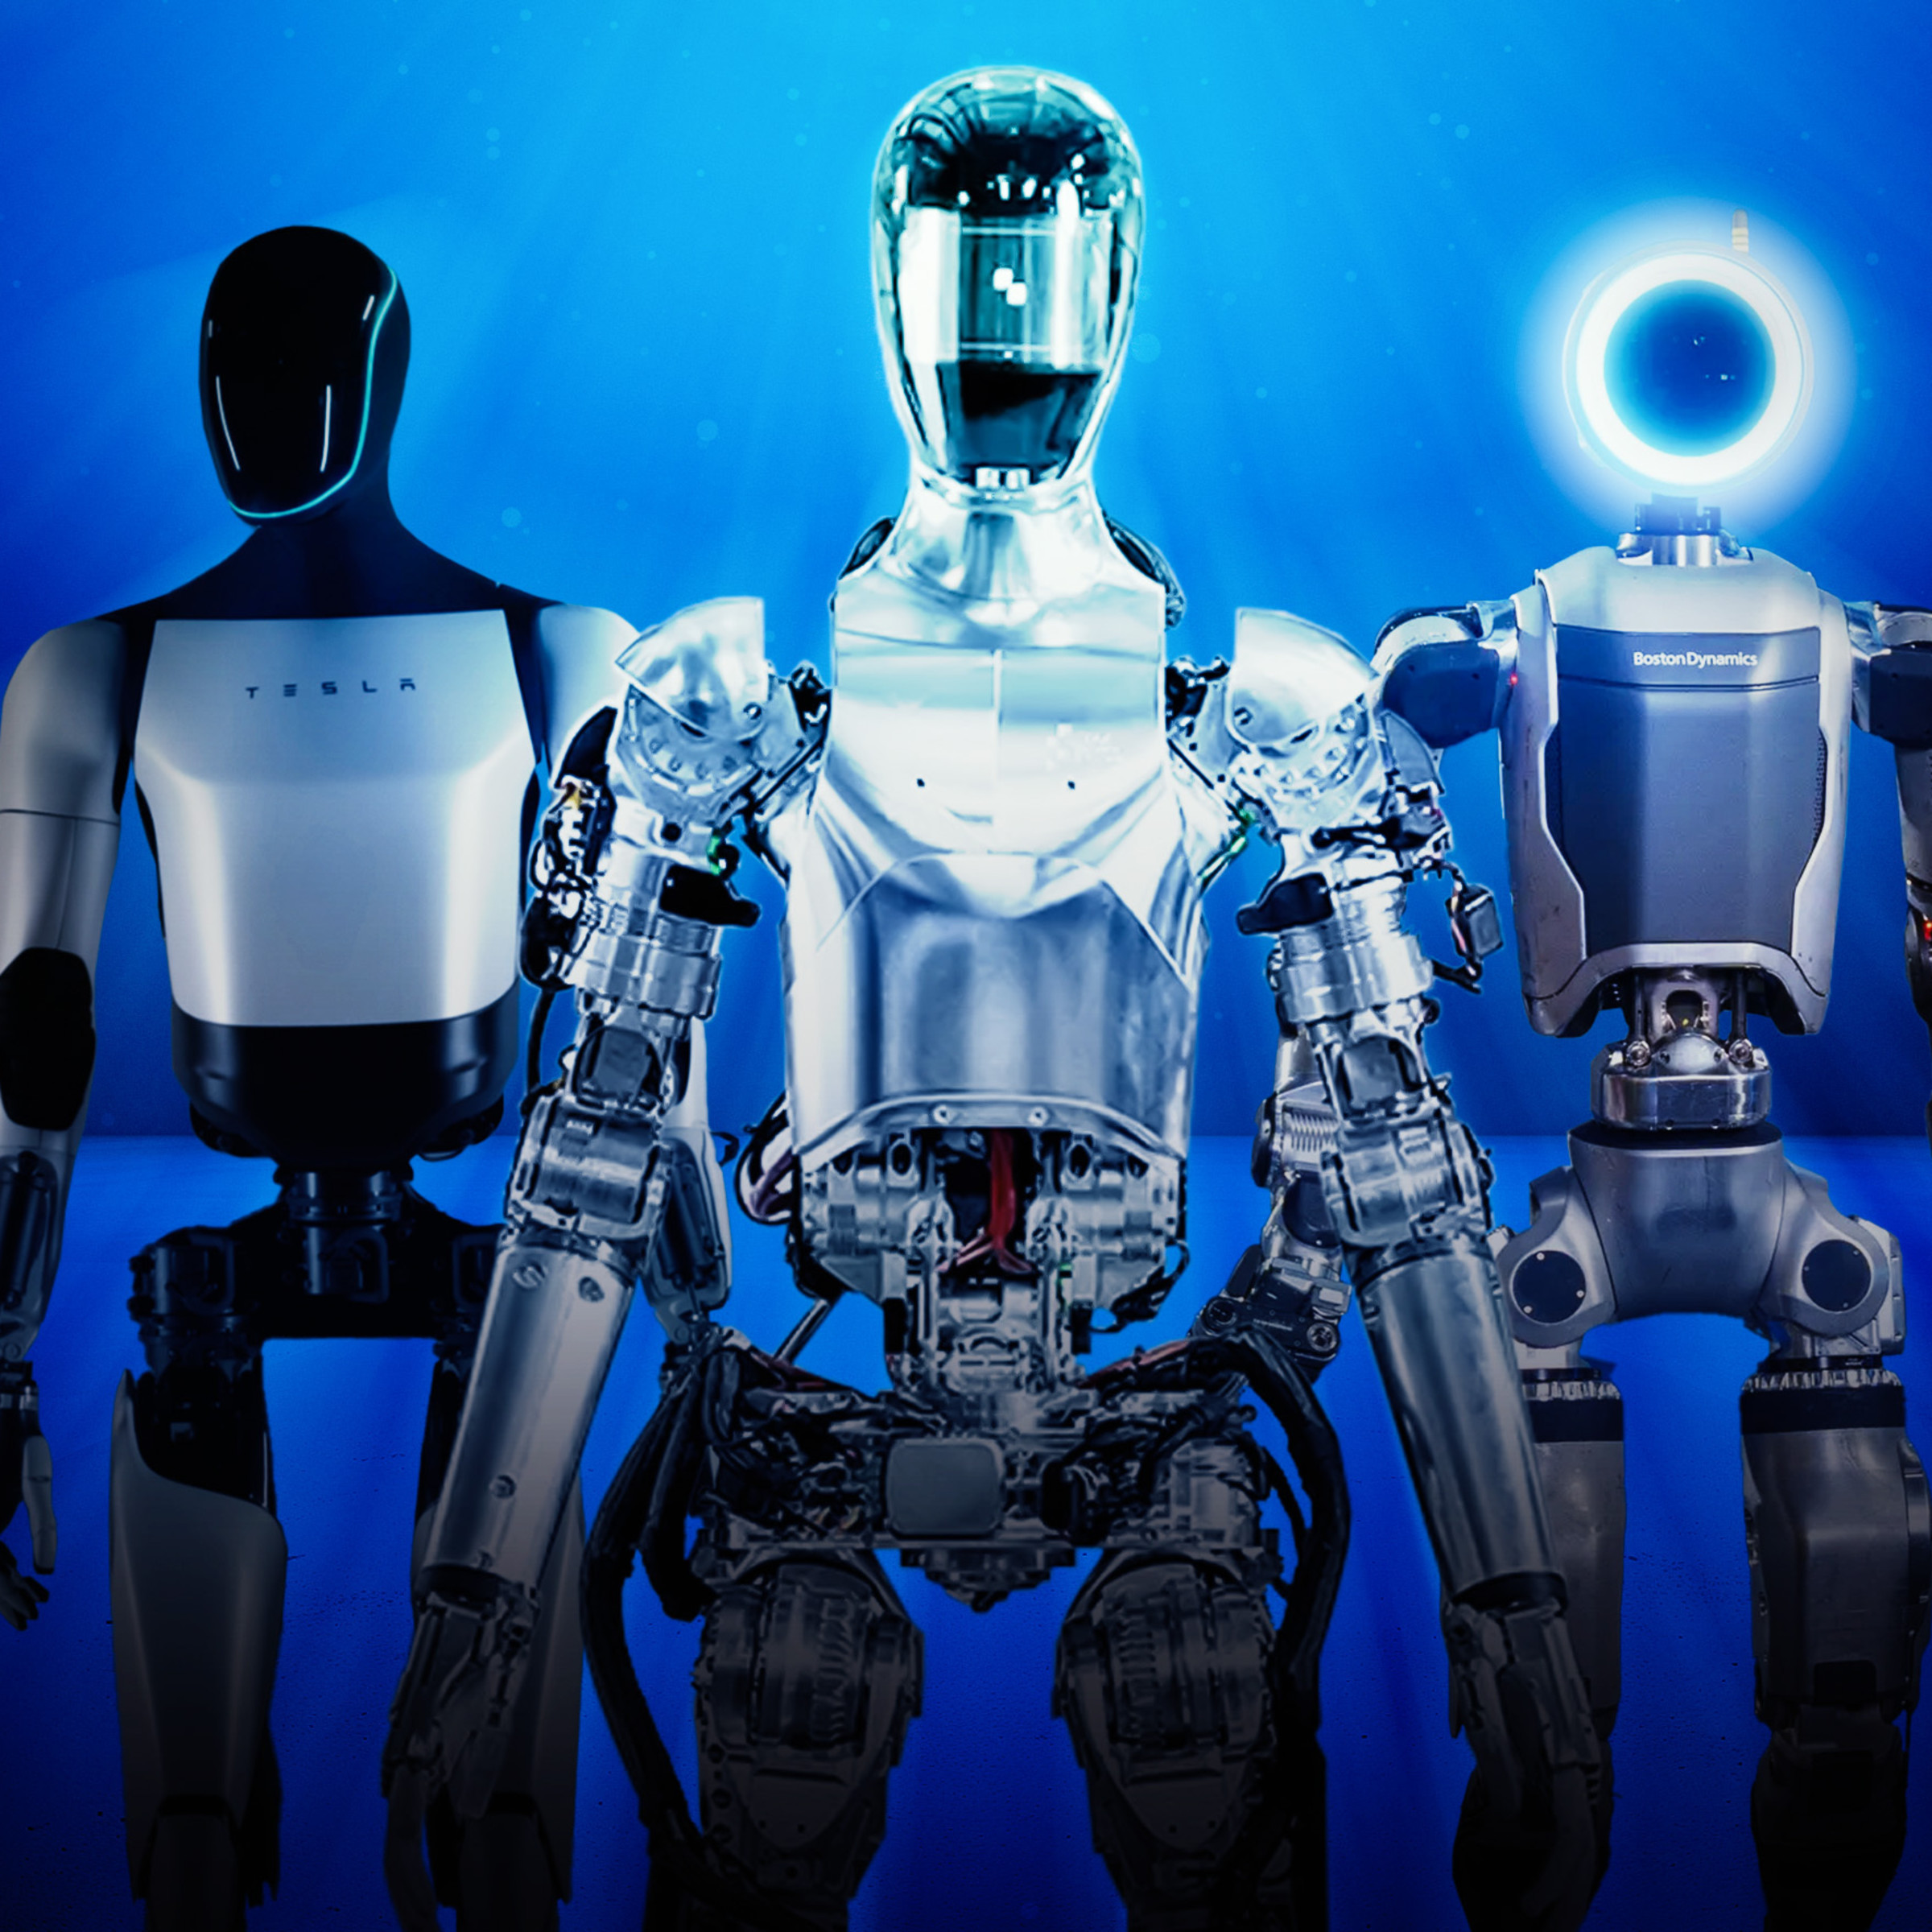 Maschinen wie wir: Der Traum vom menschenähnlichen Roboter  (Express)